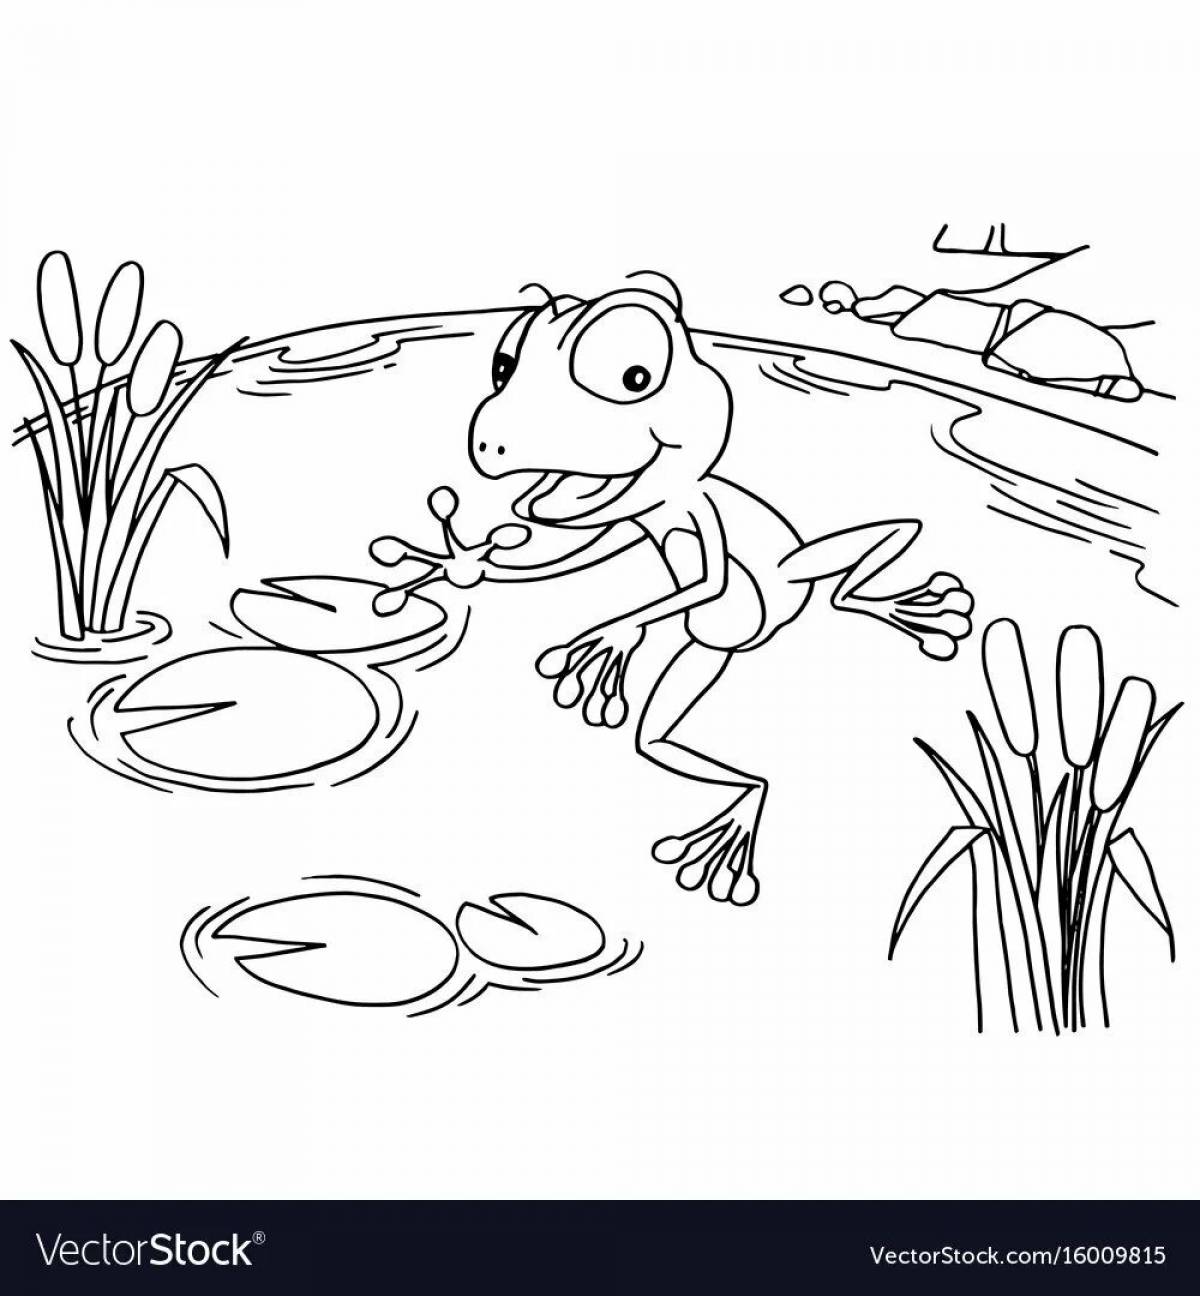 Frog traveler for kids #5